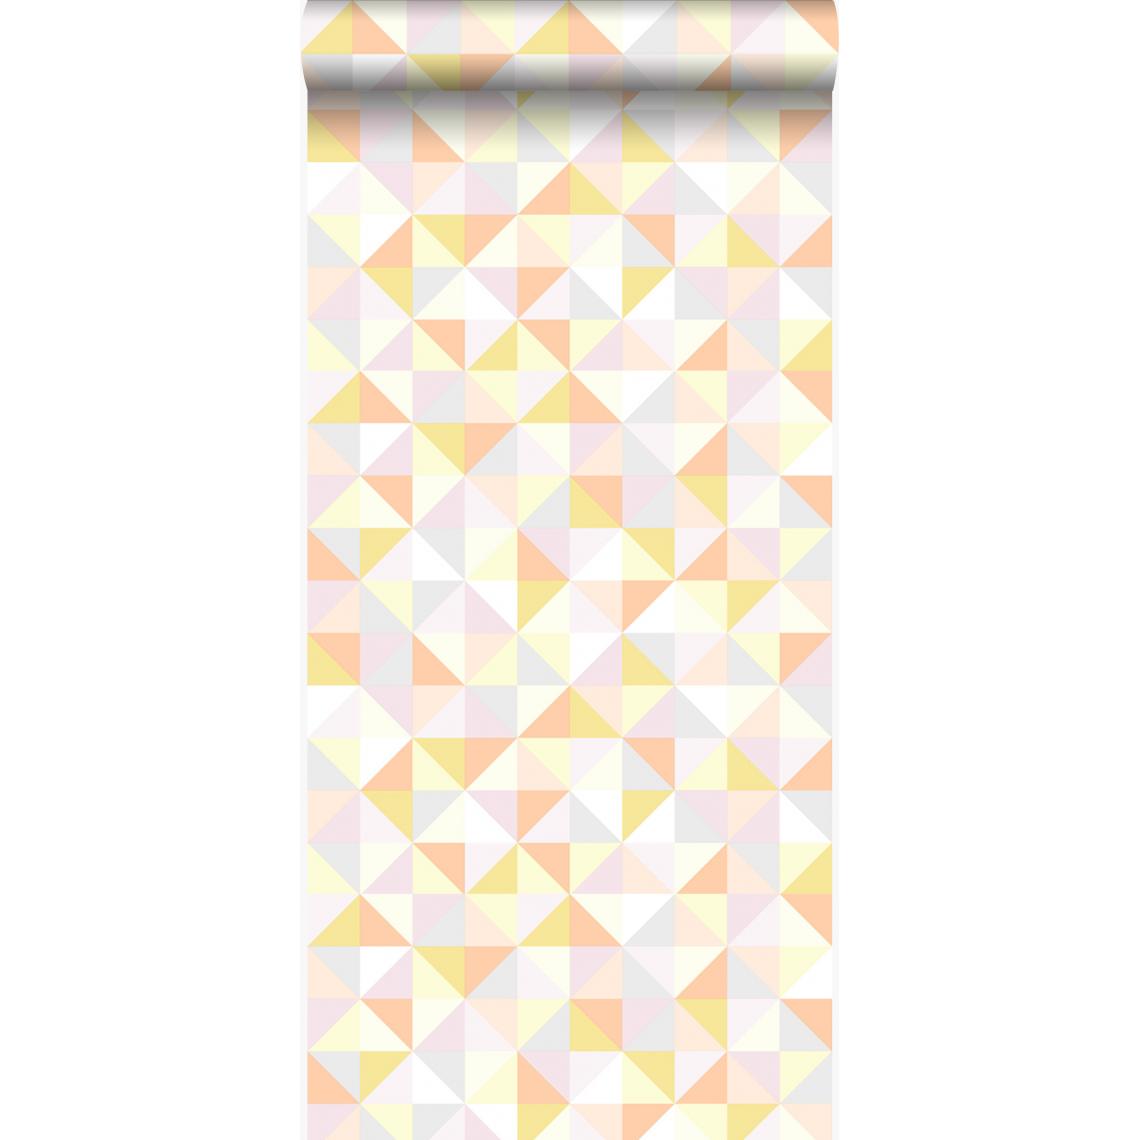 Origin - Origin papier peint triangles rose poudre clair, orange pêche pastel, jaune pastel, gris chaud clair et or brillant - 337211 - 53 cm x 10,05 m - Papier peint